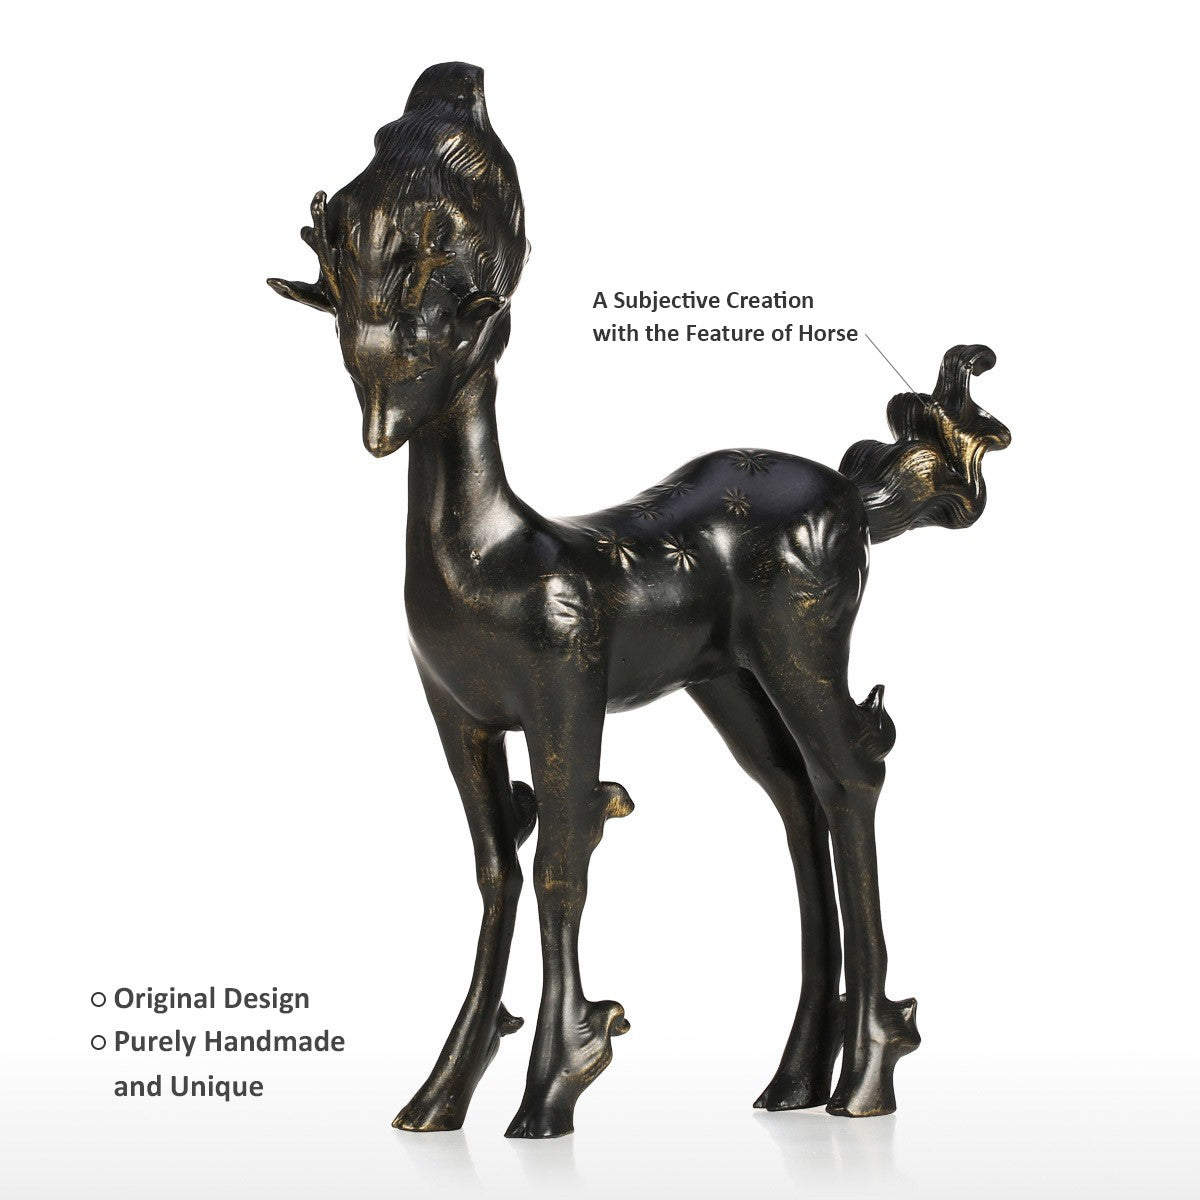 Deer Statue or Deer Sculpture with Scandinavian Design for Christmas Decorations